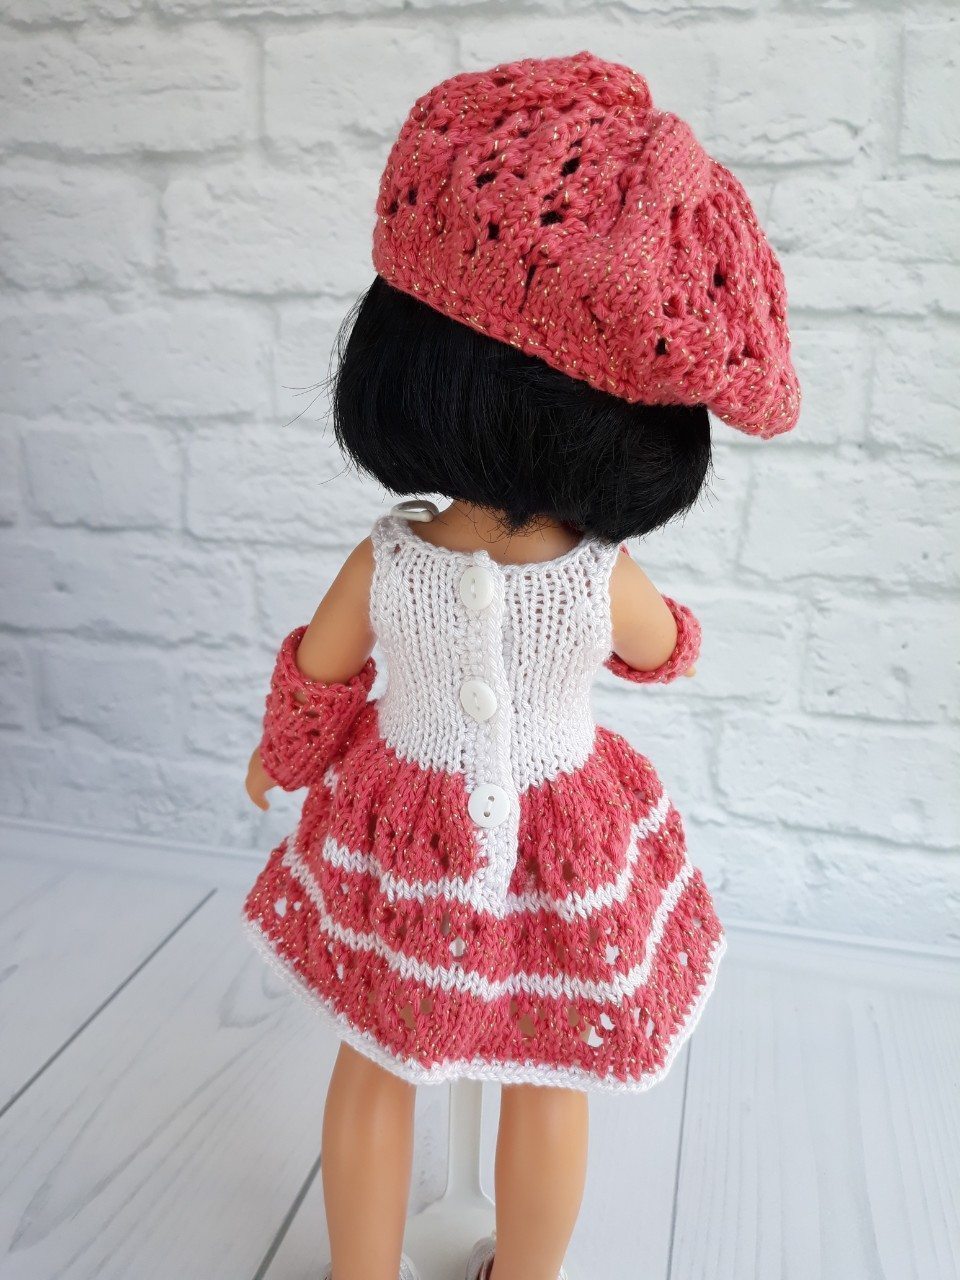 Платье для куклы Paola Reina малинка с беретом Handmade, 32 см Paola Reina HM-EK-090 #Tiptovara#